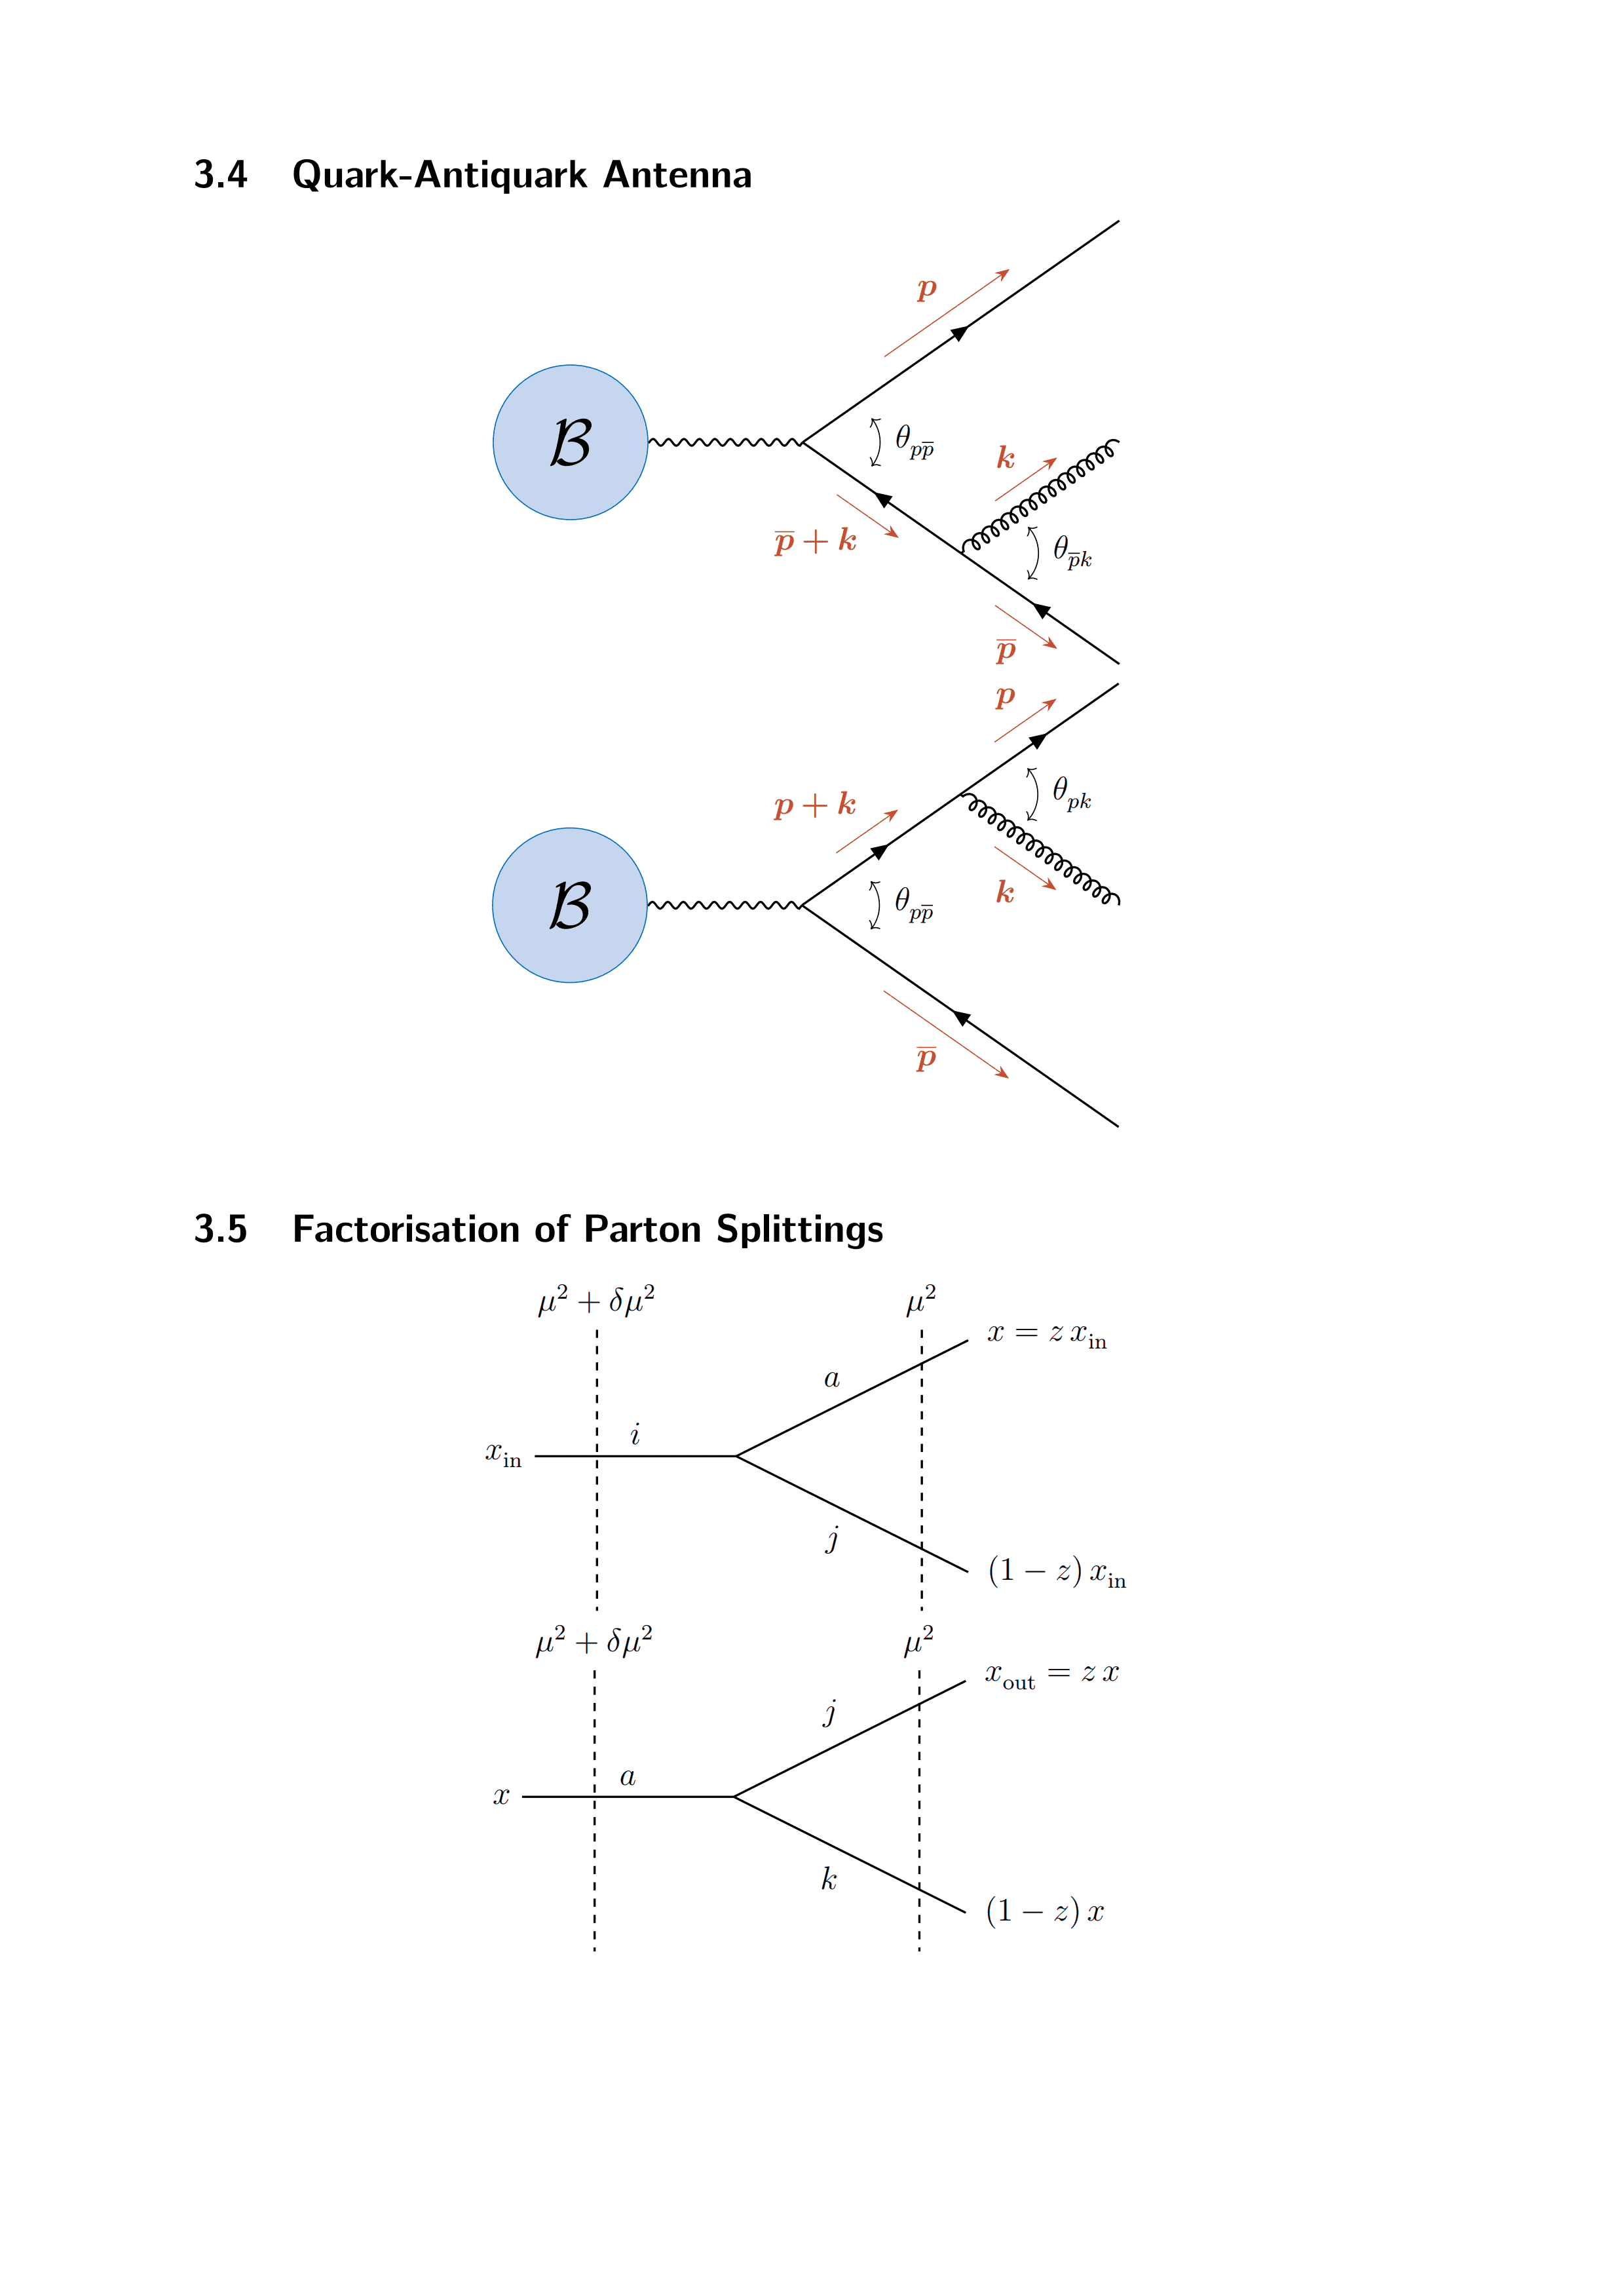 TikZ 绘制费曼图的样例